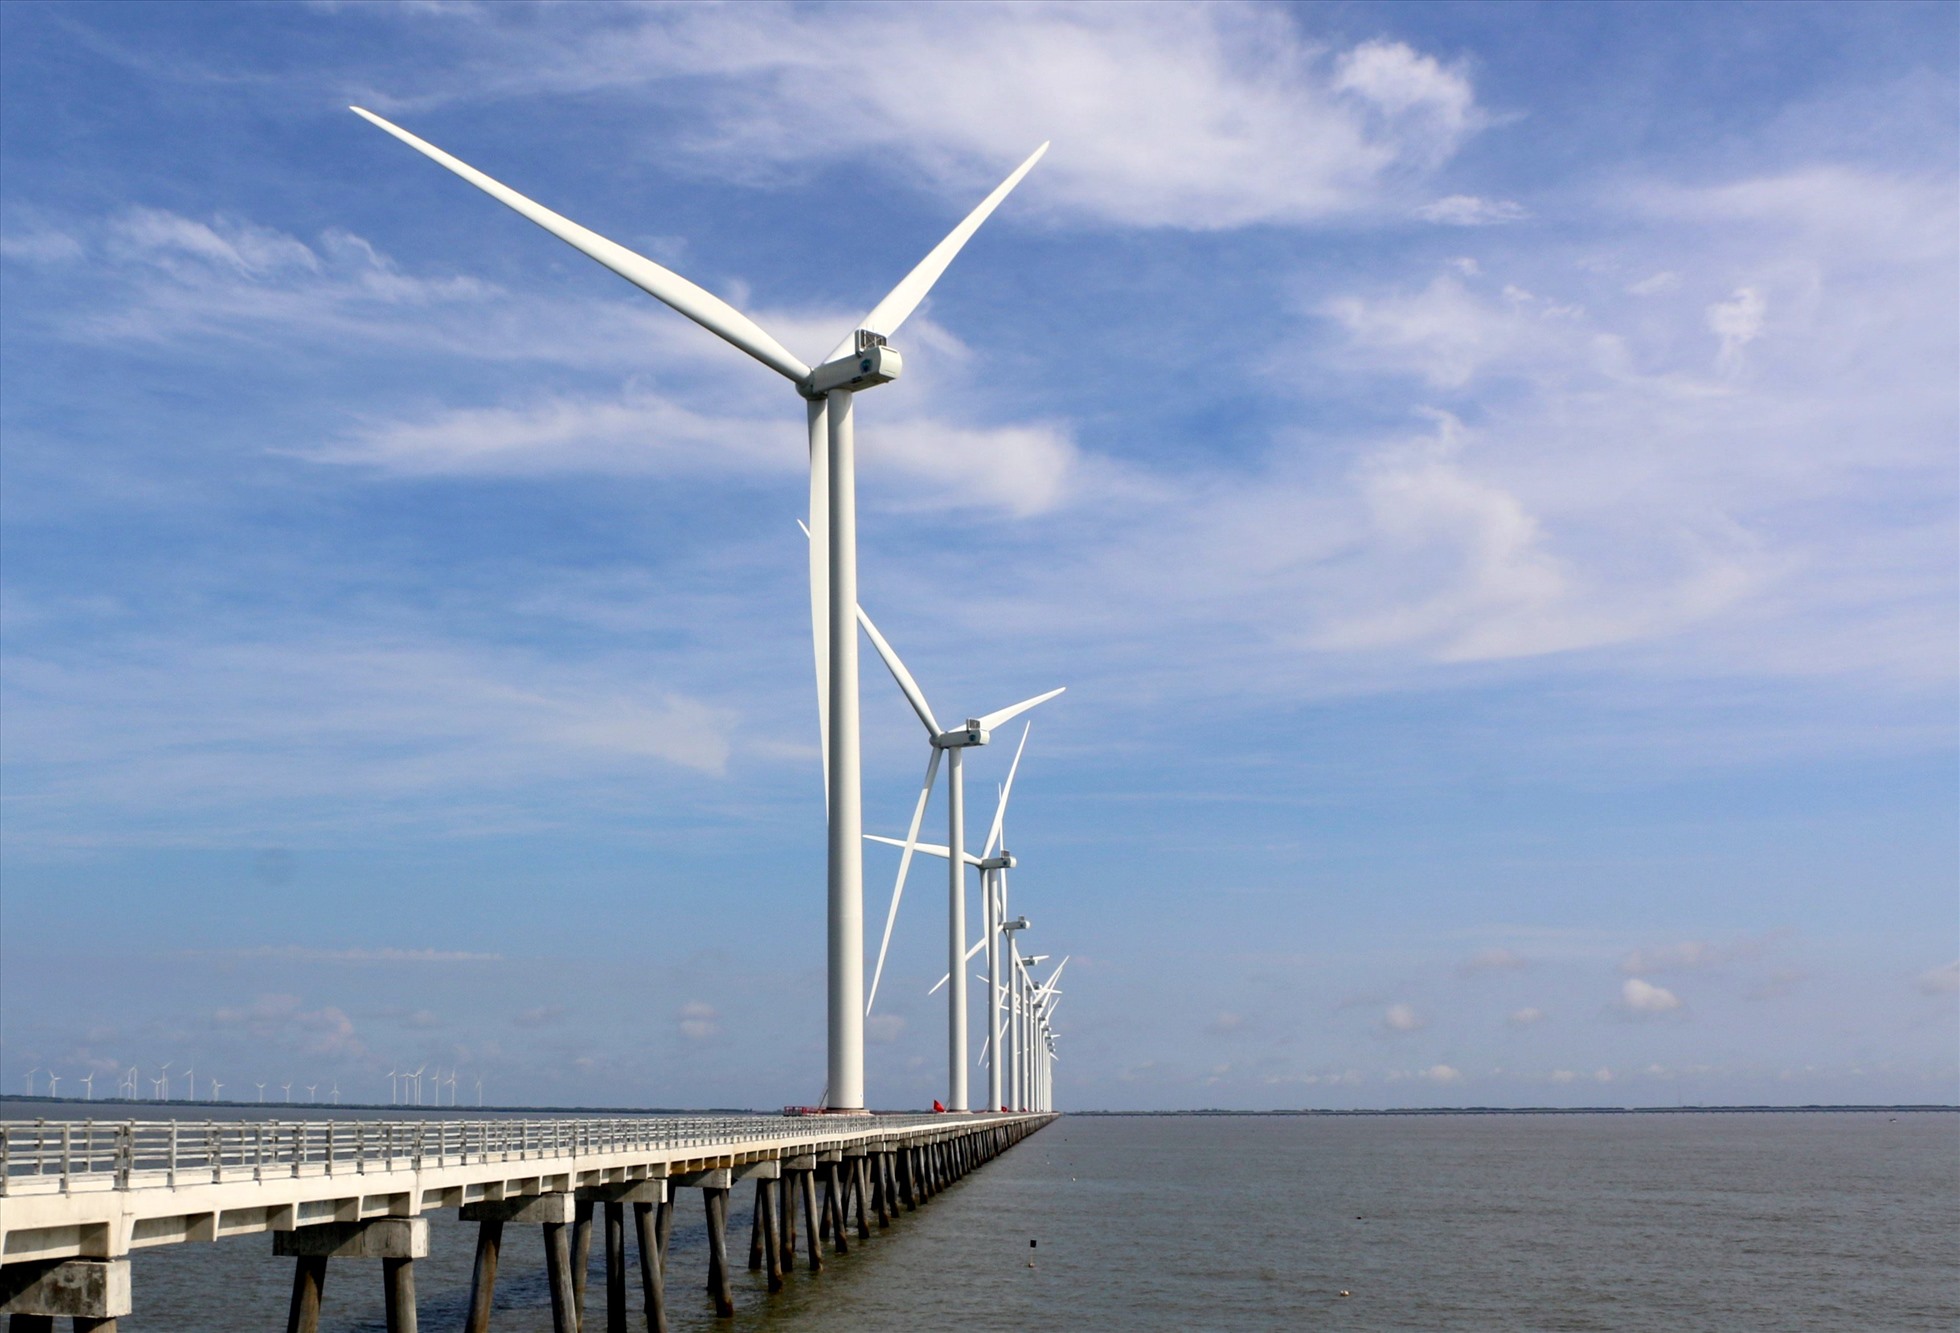 TỈnh Bạc Liêu quy hoạch đến 2025 tổng cộng 2.000 MW điện gió (gồm 500 MW điện gió trên bờ và 1.500 MW điện gió ngoài khơi). Ảnh: Nhật Hồ